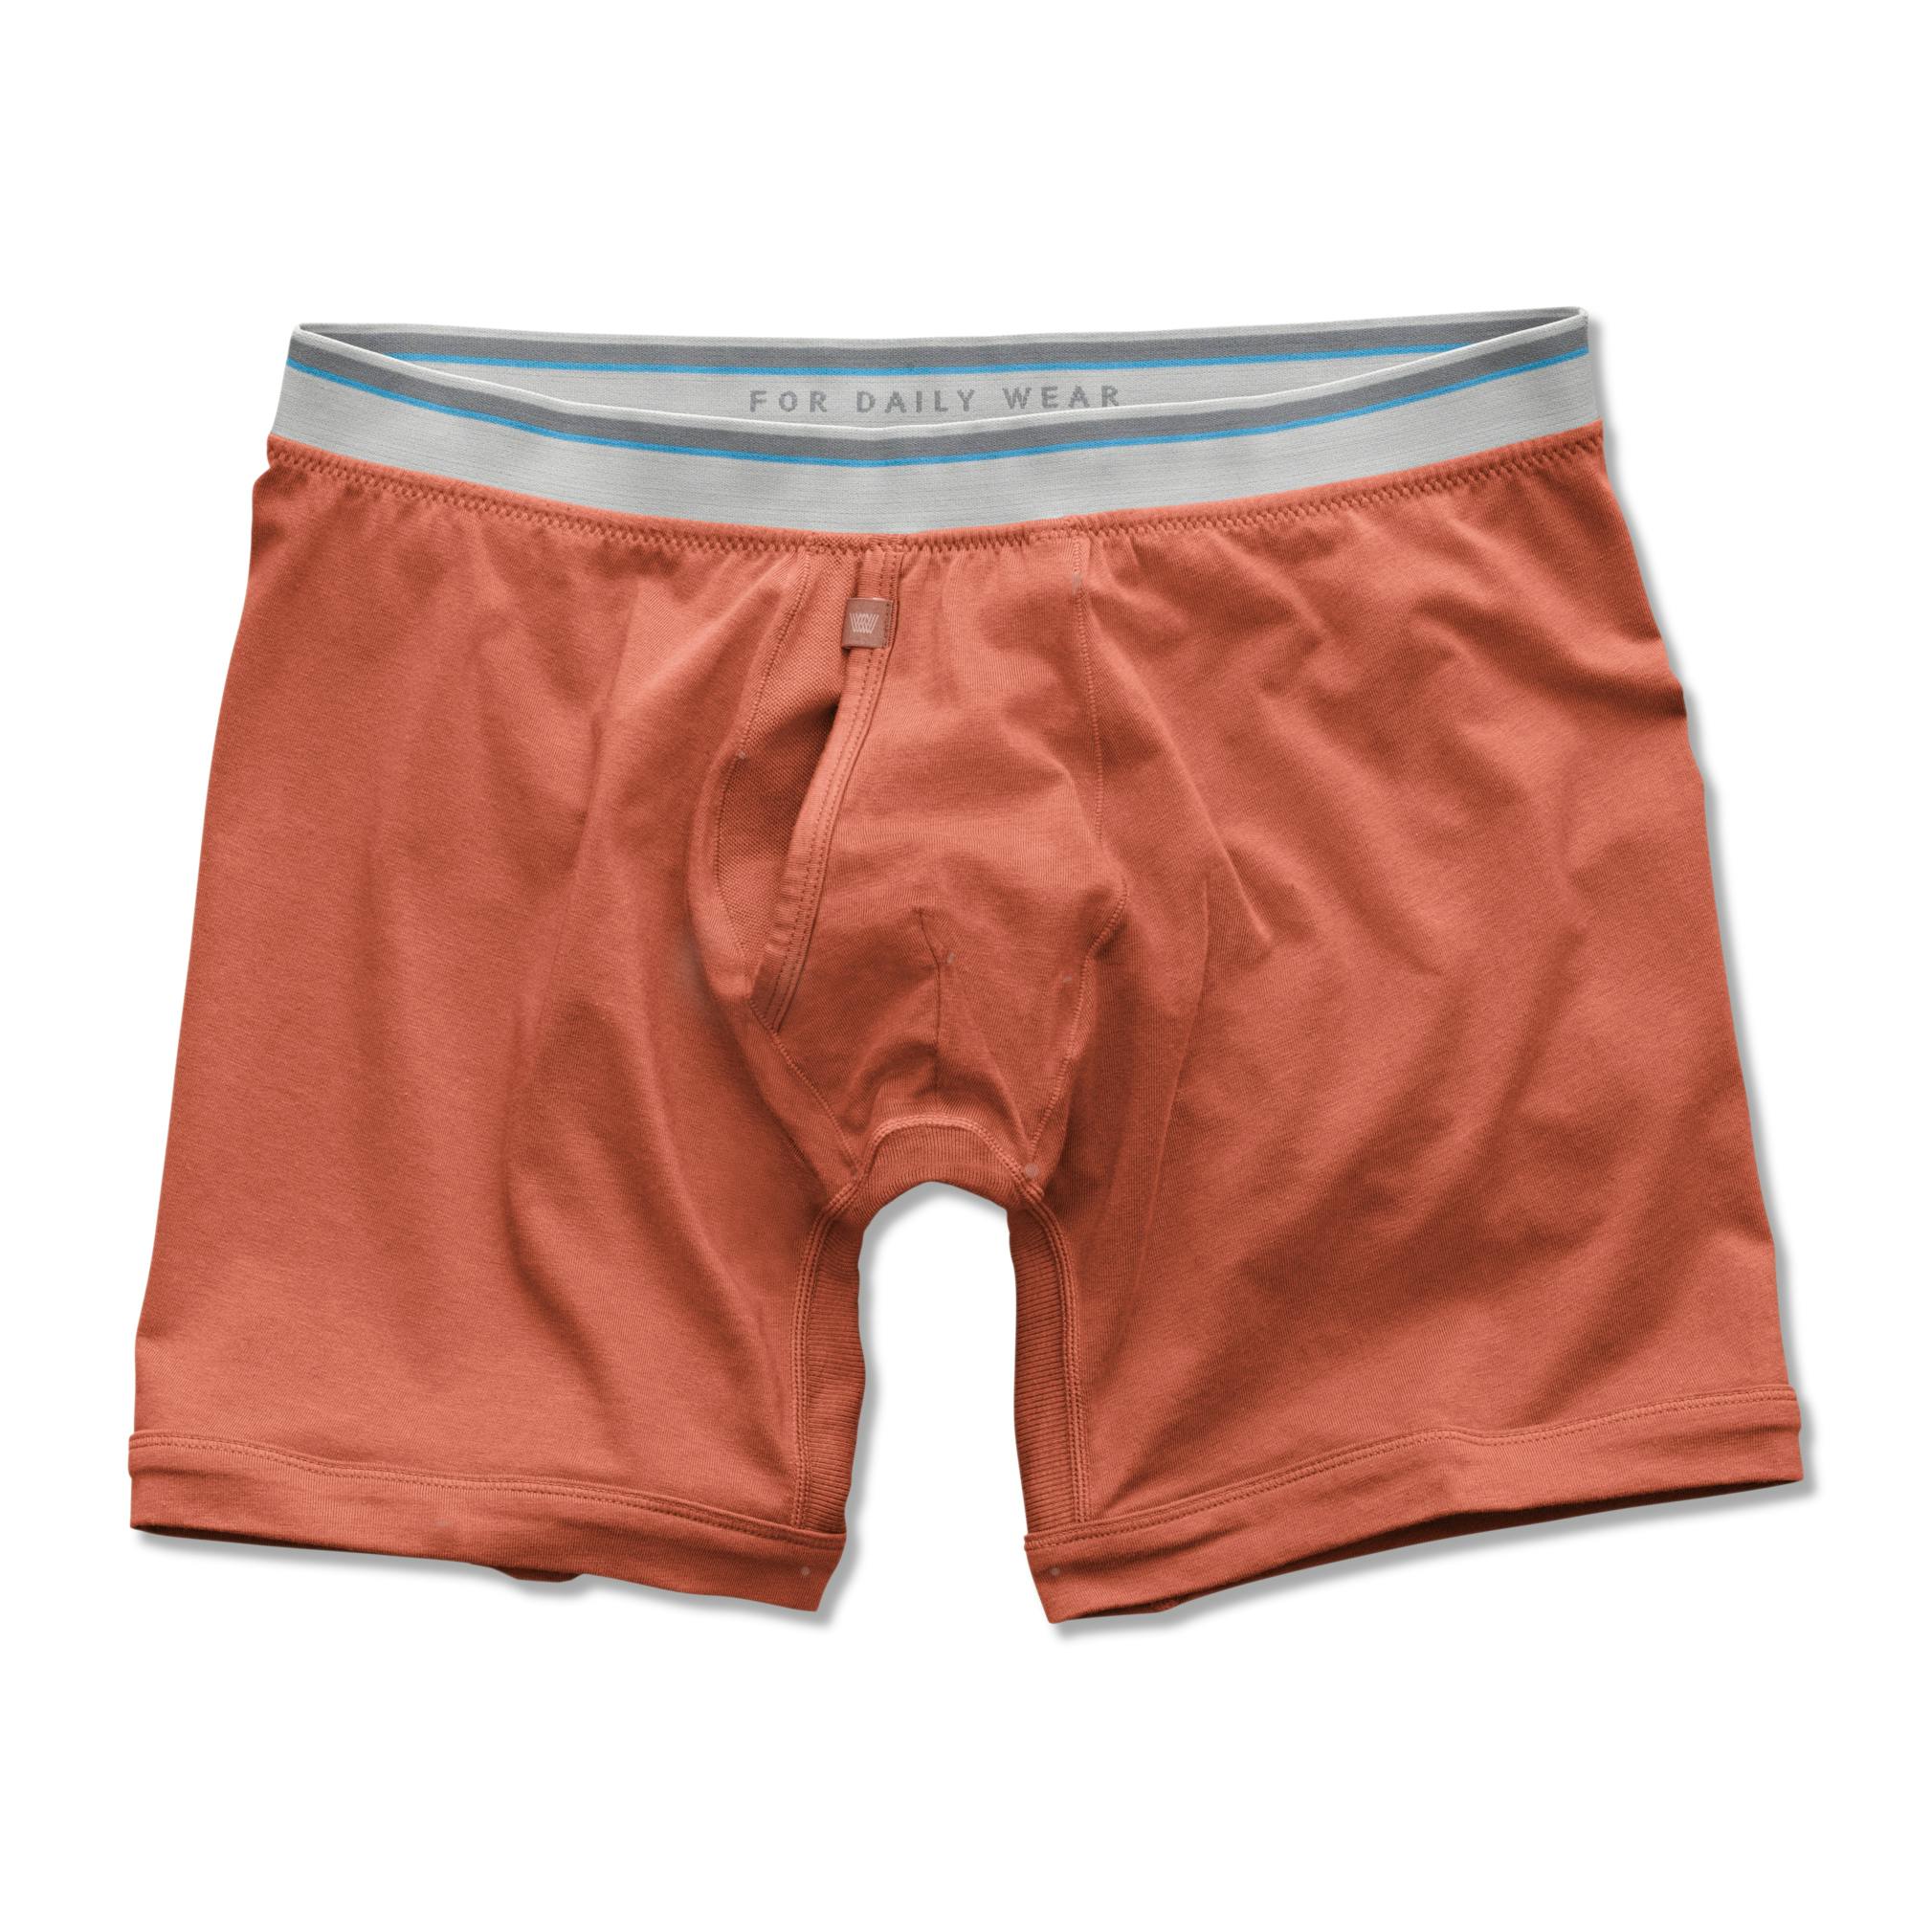 Mack Weldon Boxer Brief - Orange Rust, Underwear